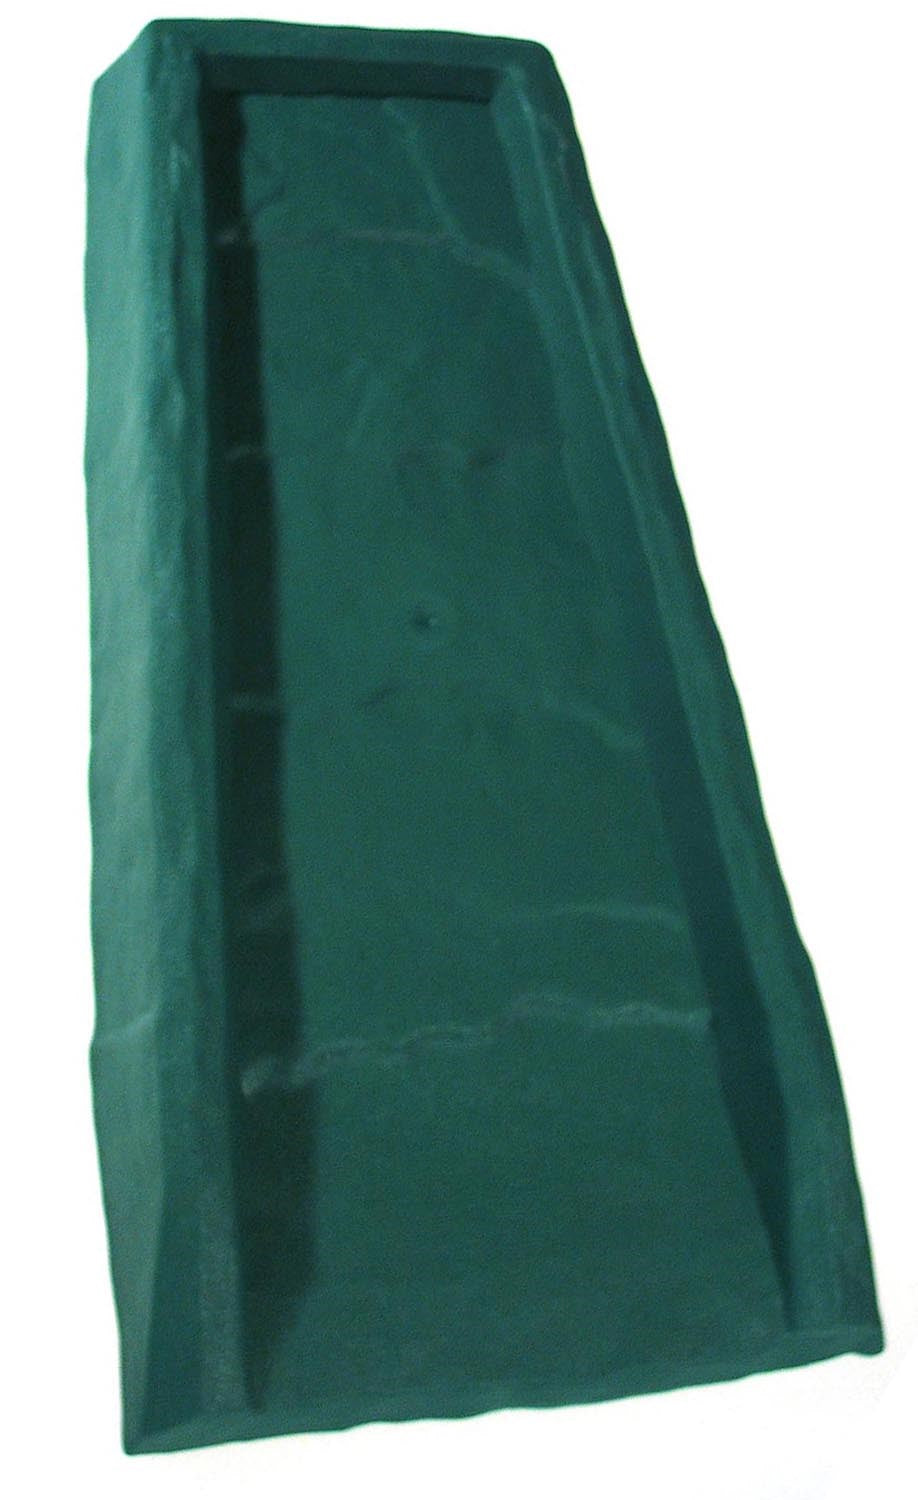 AVON PLASTICS, Marque de maître 2.5 in. H X 11.5 in. L X 24 po. L Bloc anti-éclaboussures en plastique vert